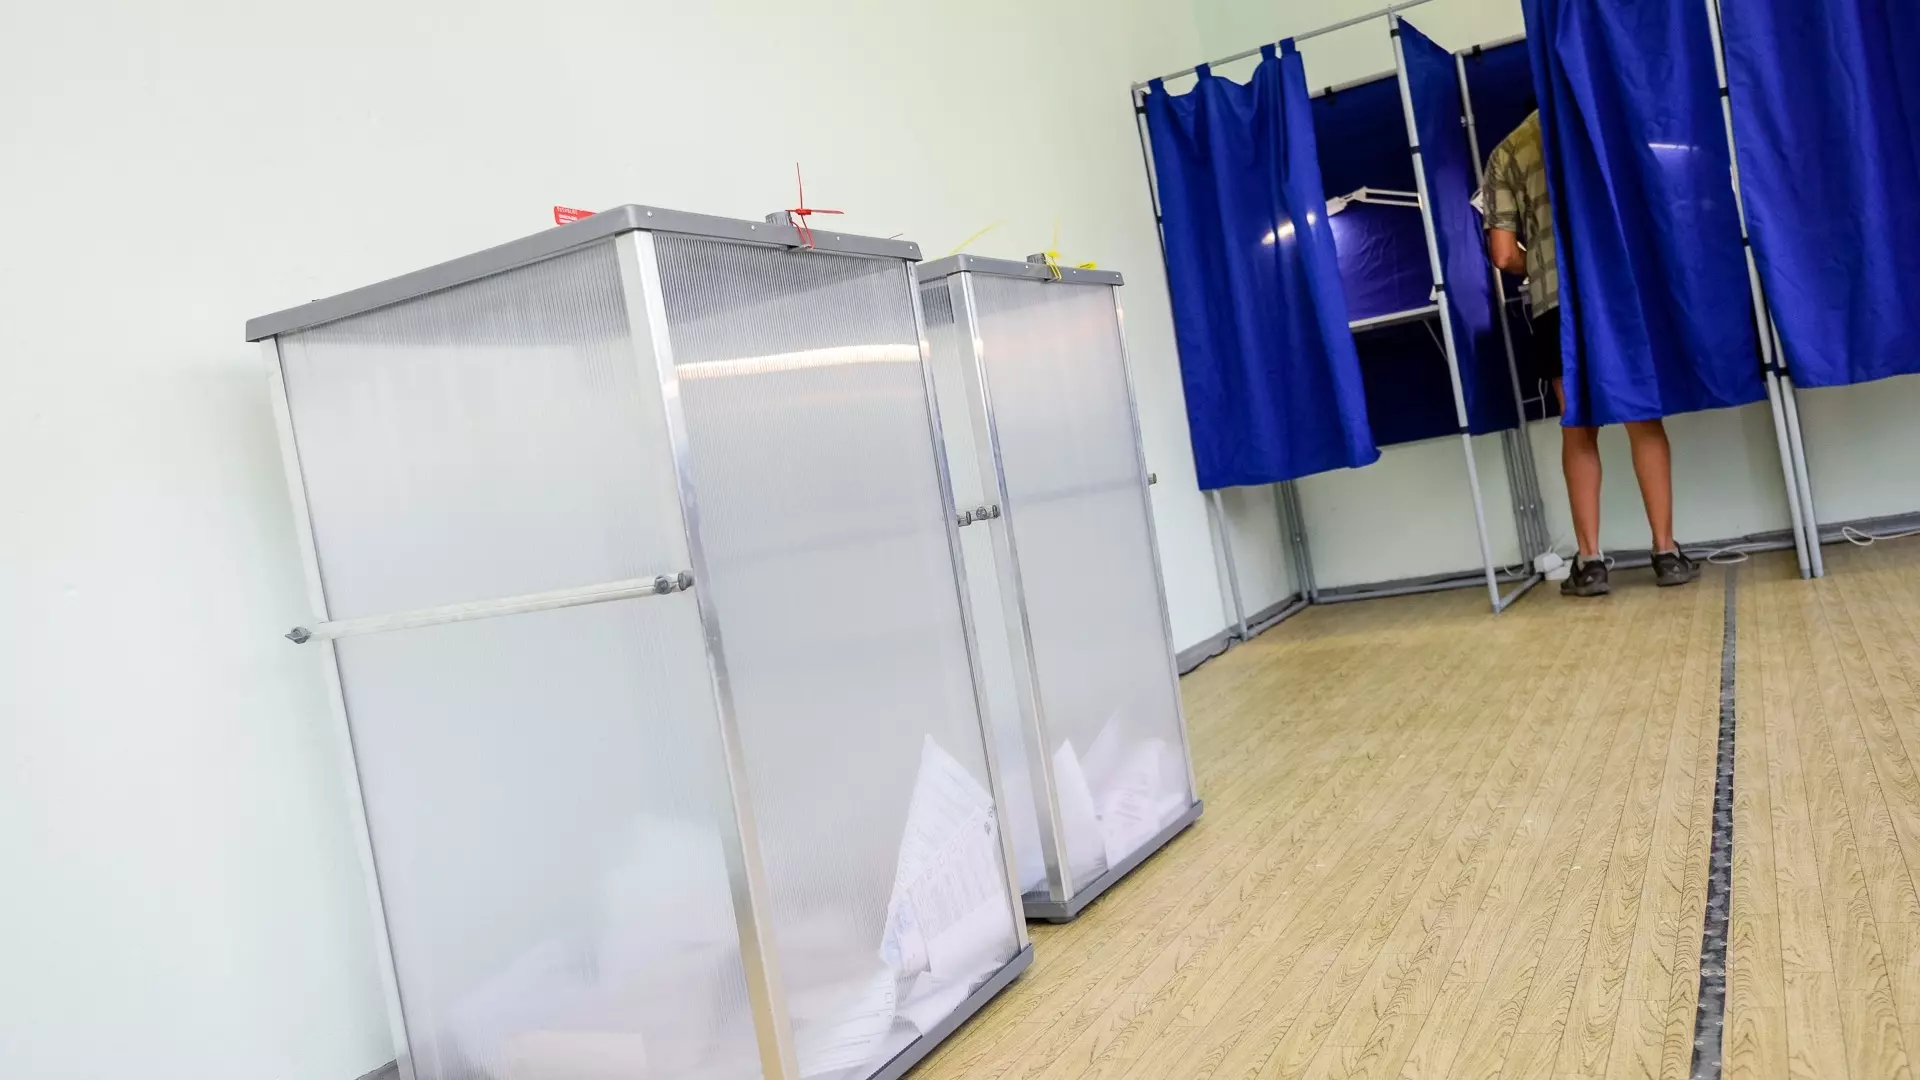 Иноагентов не пустят на выборы в Волгограде